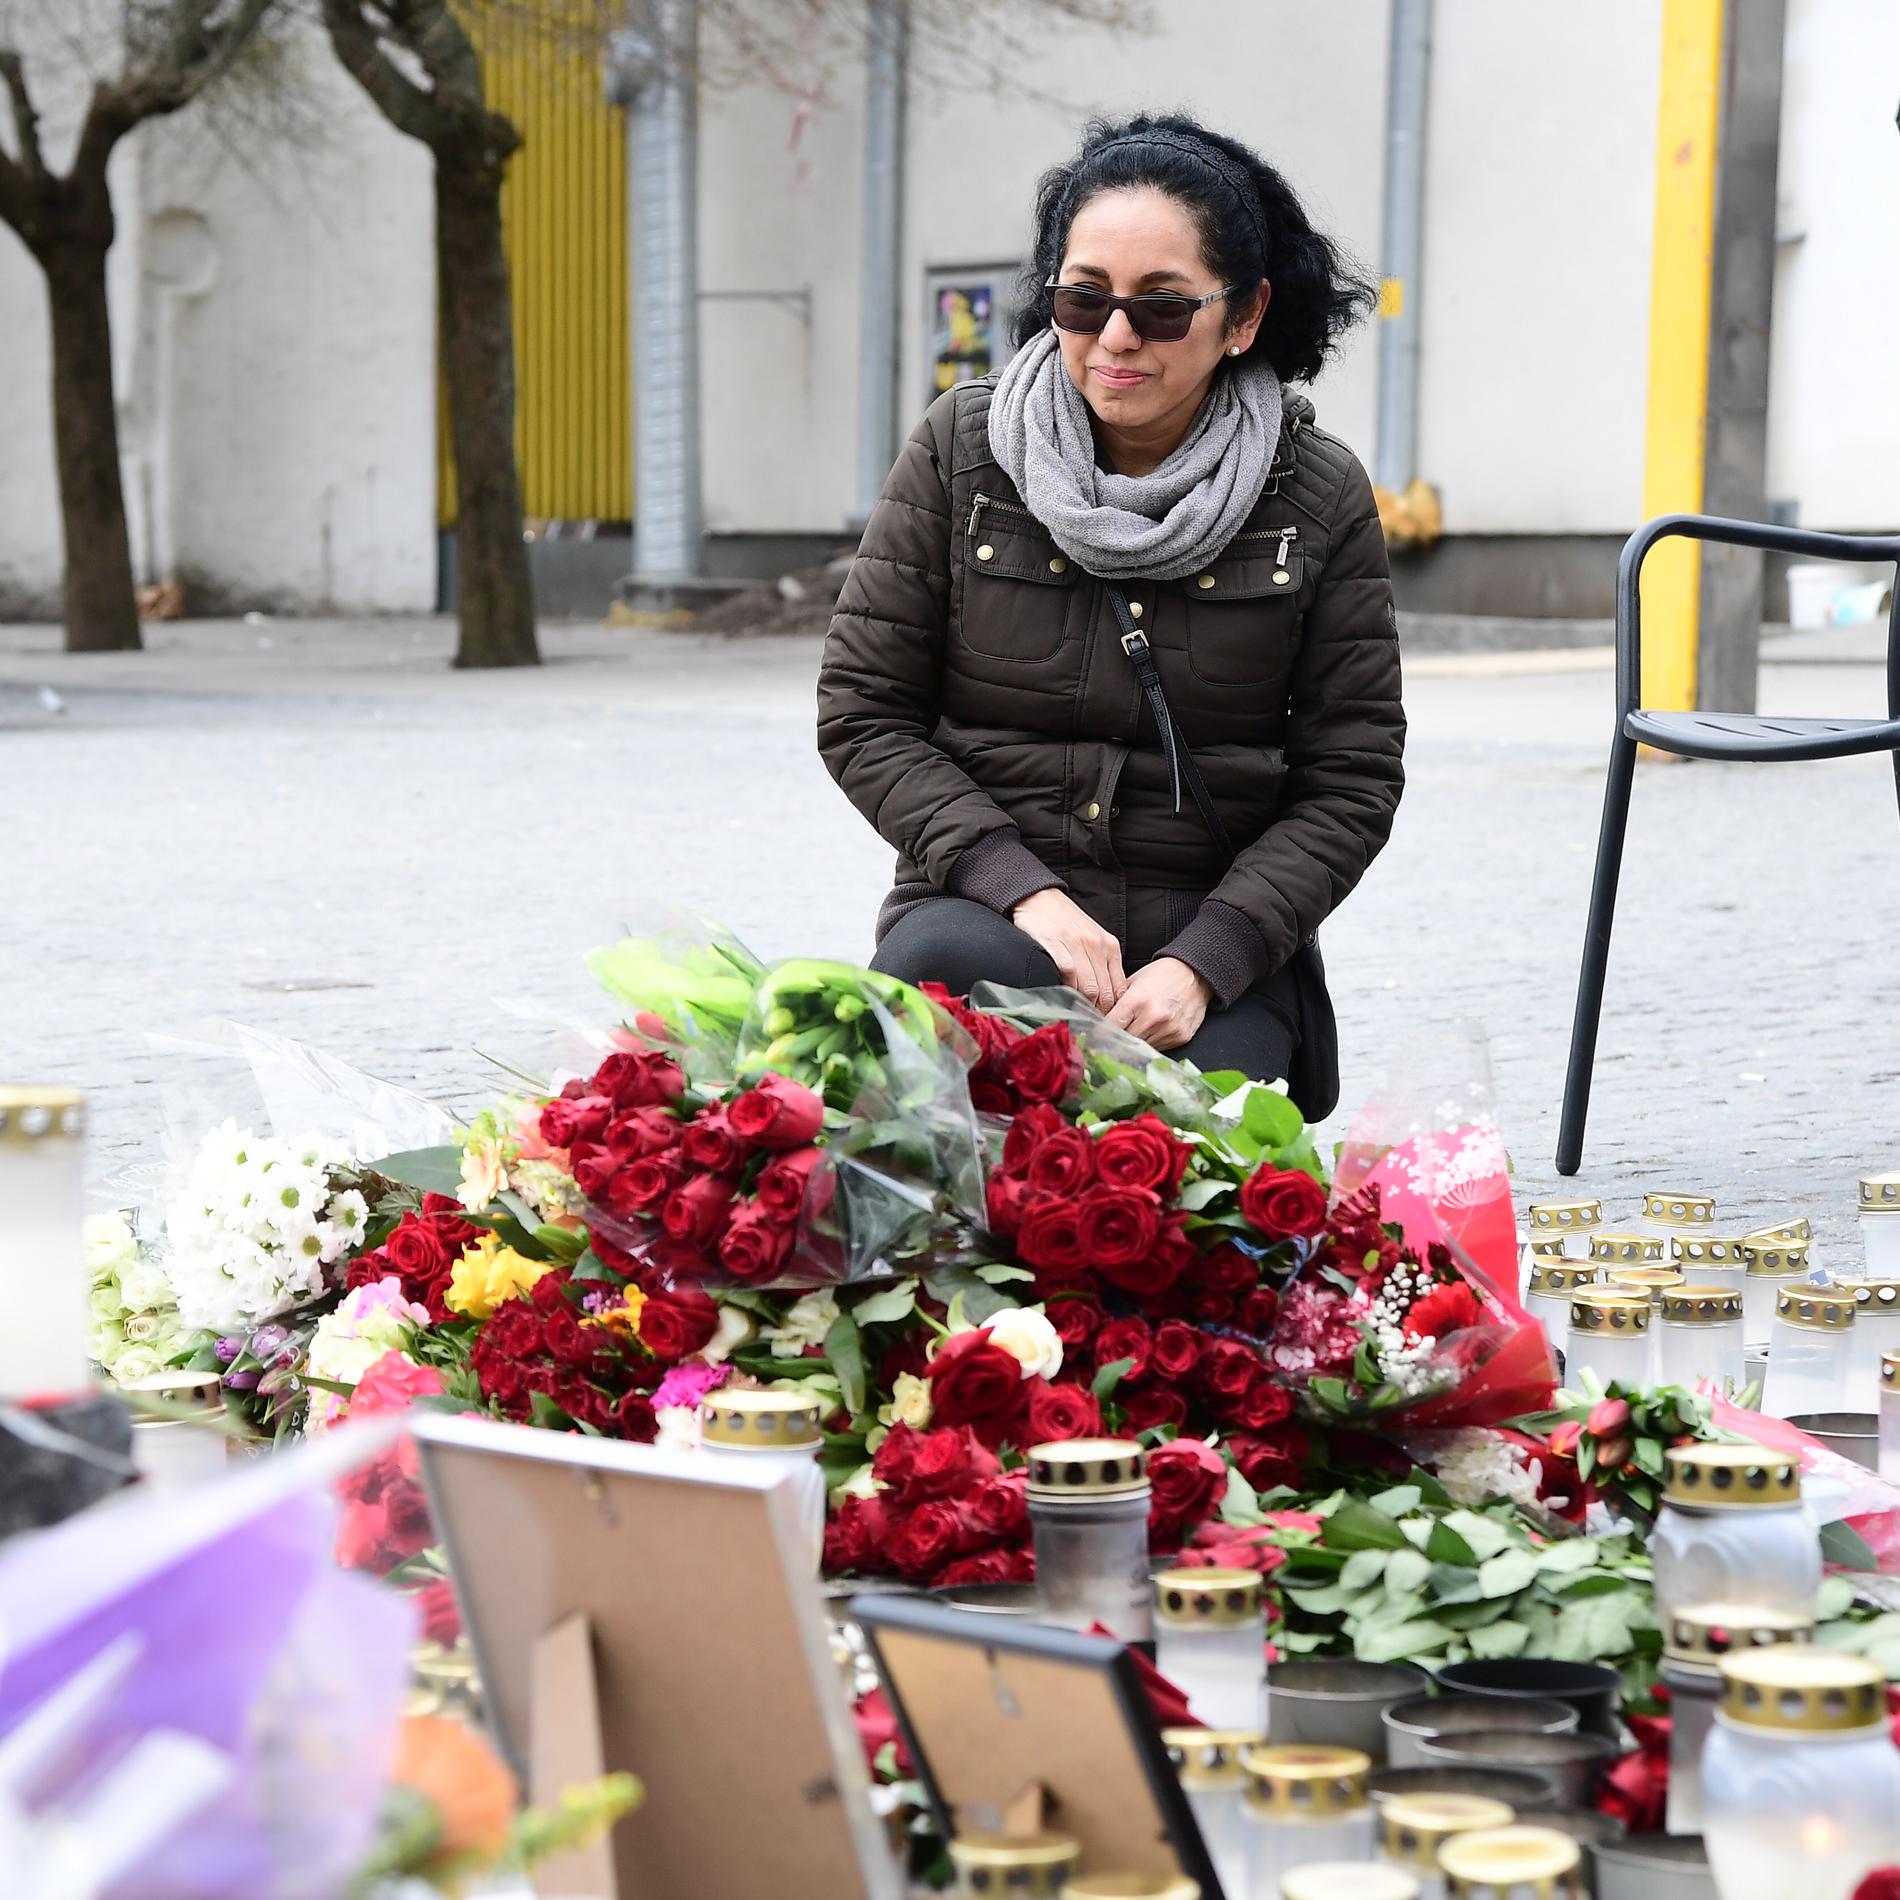 Många stannar till vid minnesplatsen för att hedra de döda. En av dem är 51-åriga Isabel Tapia, som bor i närheten.